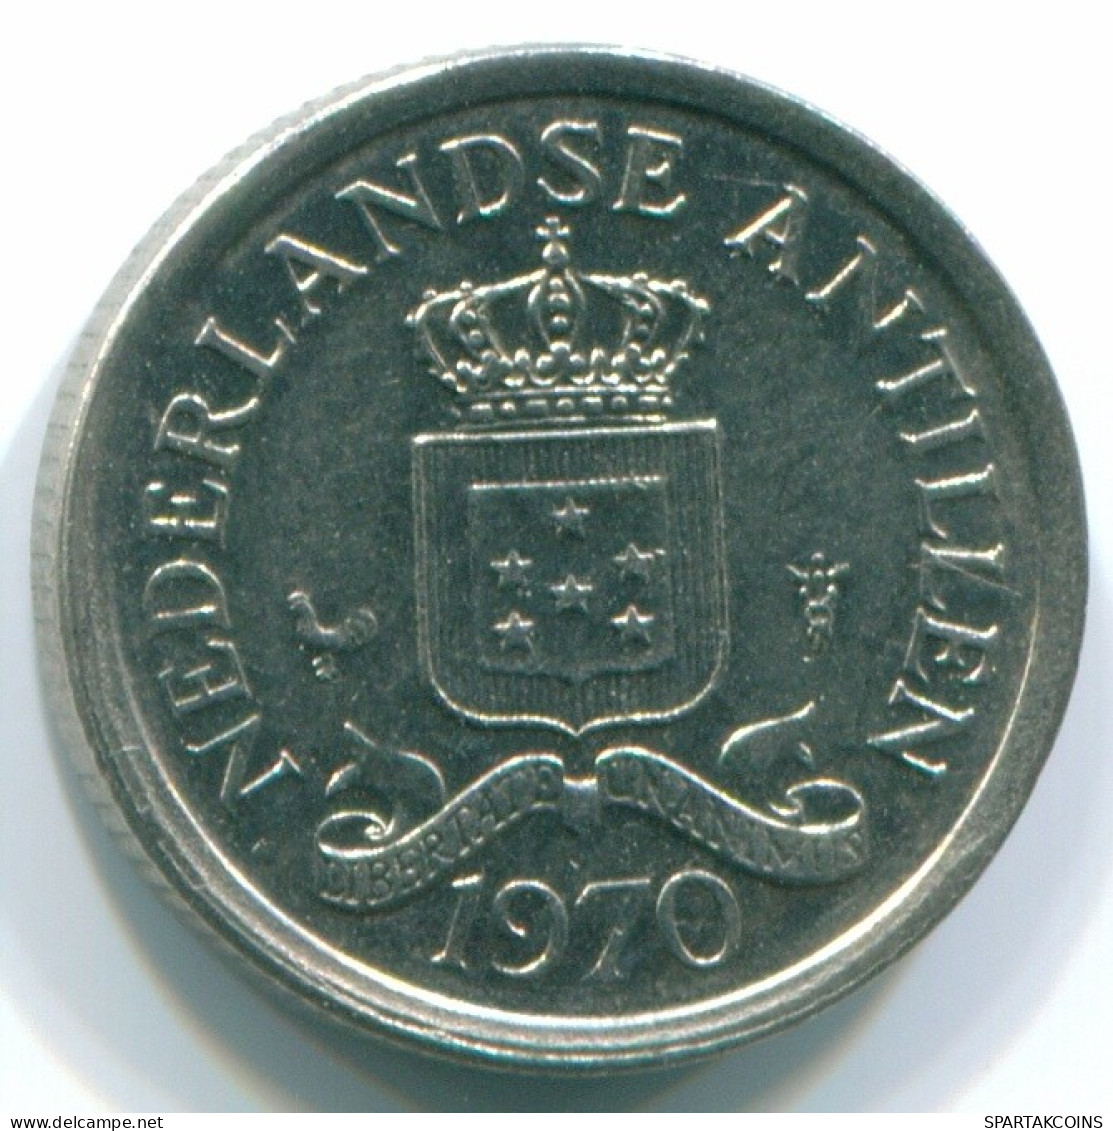 10 CENTS 1970 NIEDERLÄNDISCHE ANTILLEN Nickel Koloniale Münze #S13333.D.A - Niederländische Antillen